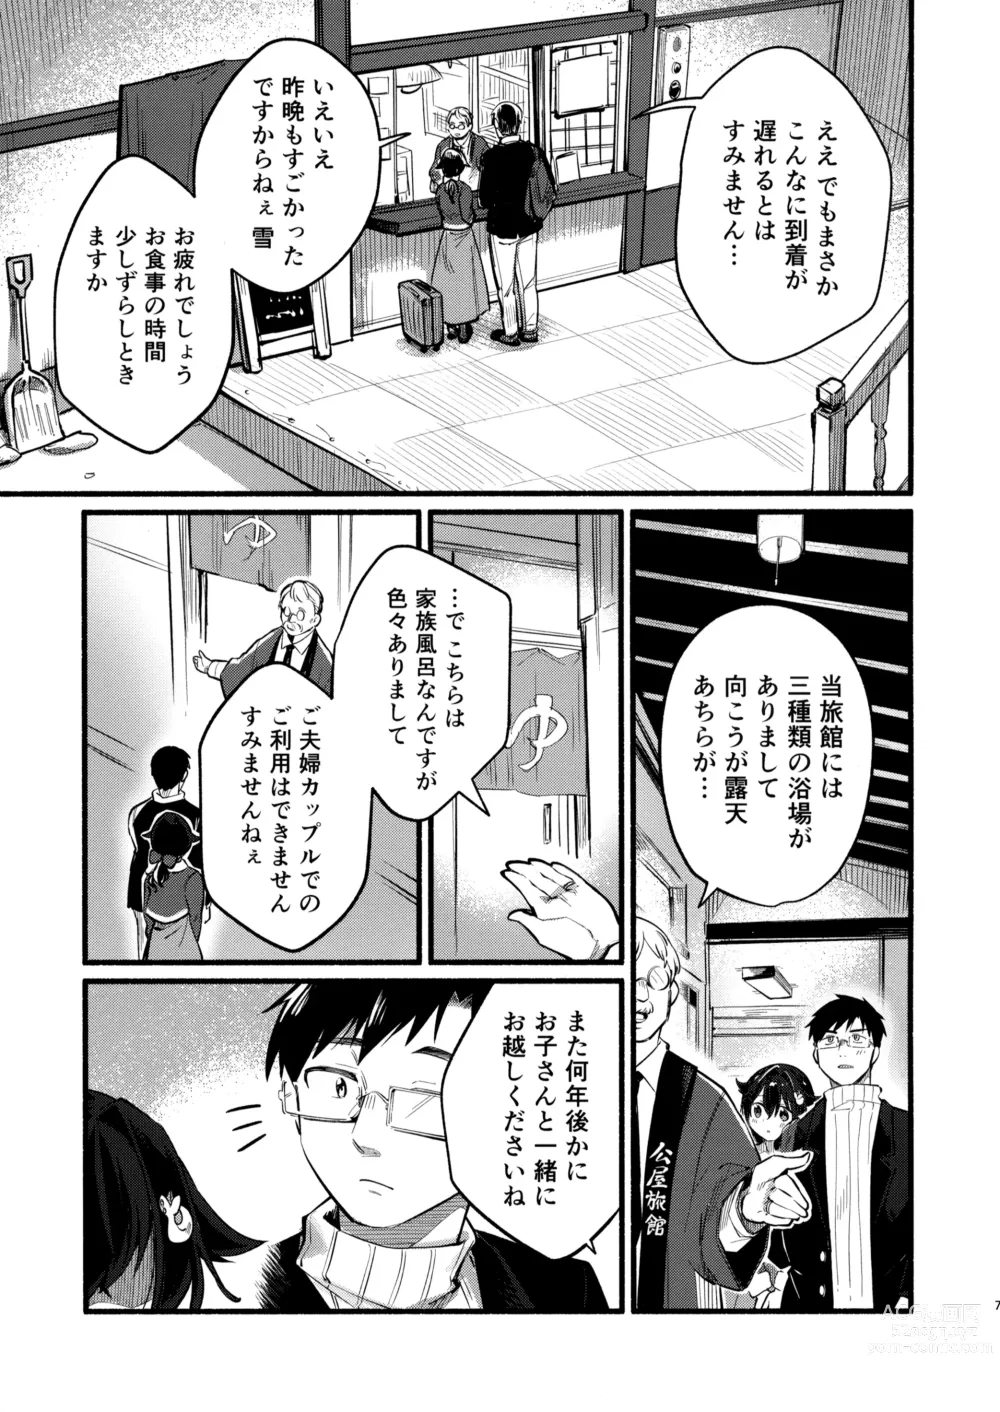 Page 6 of doujinshi Jingei-chan to Mitsugetsu Onsen Tabi no Yado